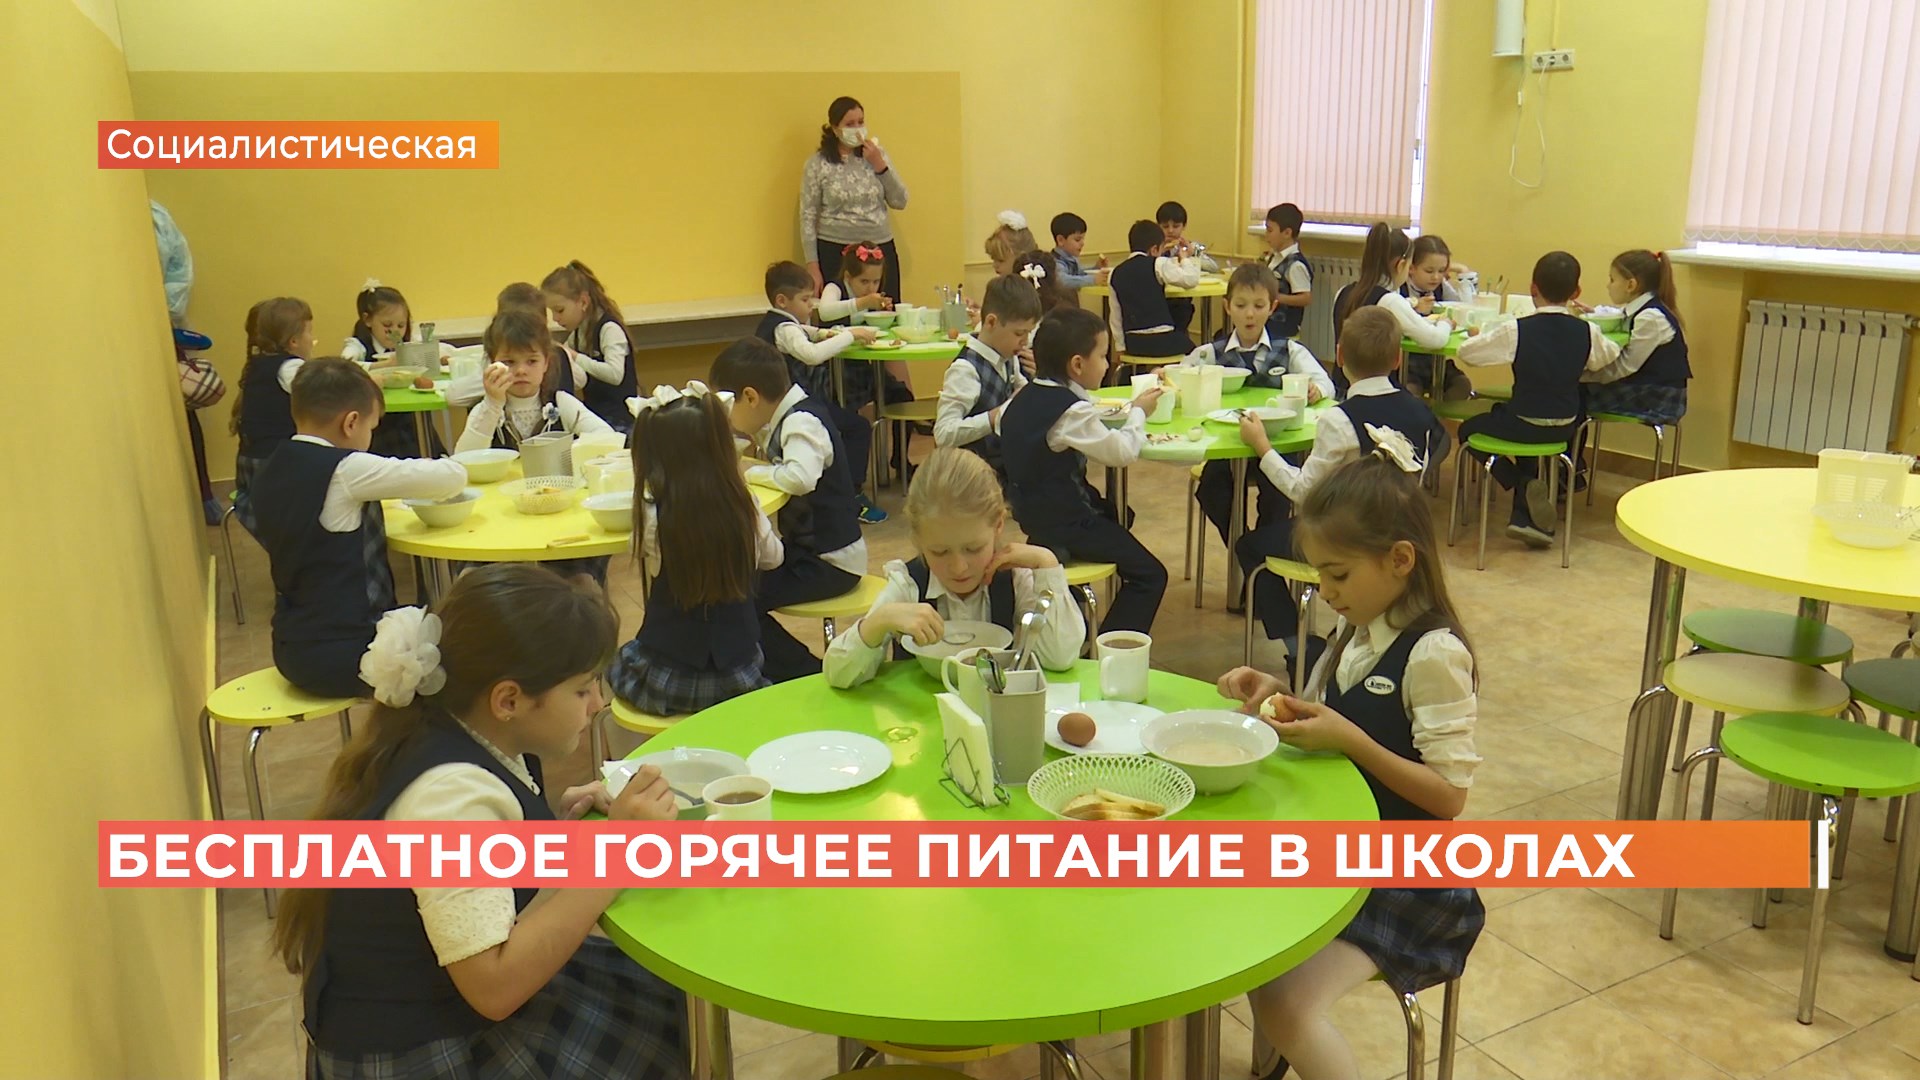 Новое и современное: в Ростове обновили оборудование в школьных буфетах и столовых